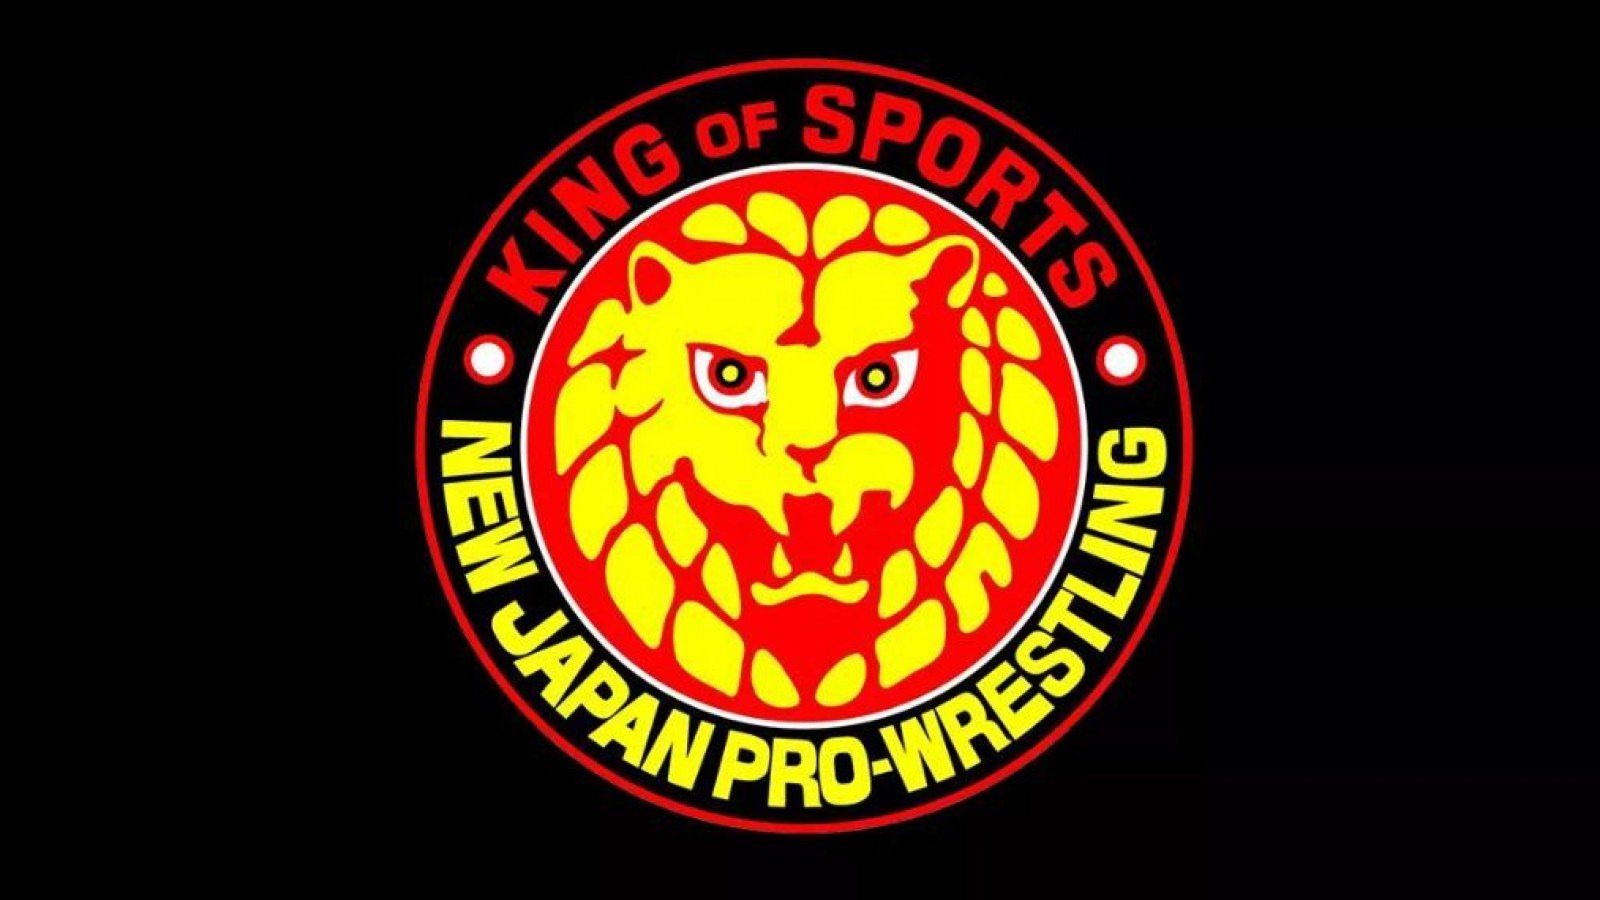 El presidente de NJPW dimite y se nombra a un luchador legendario como su reemplazo